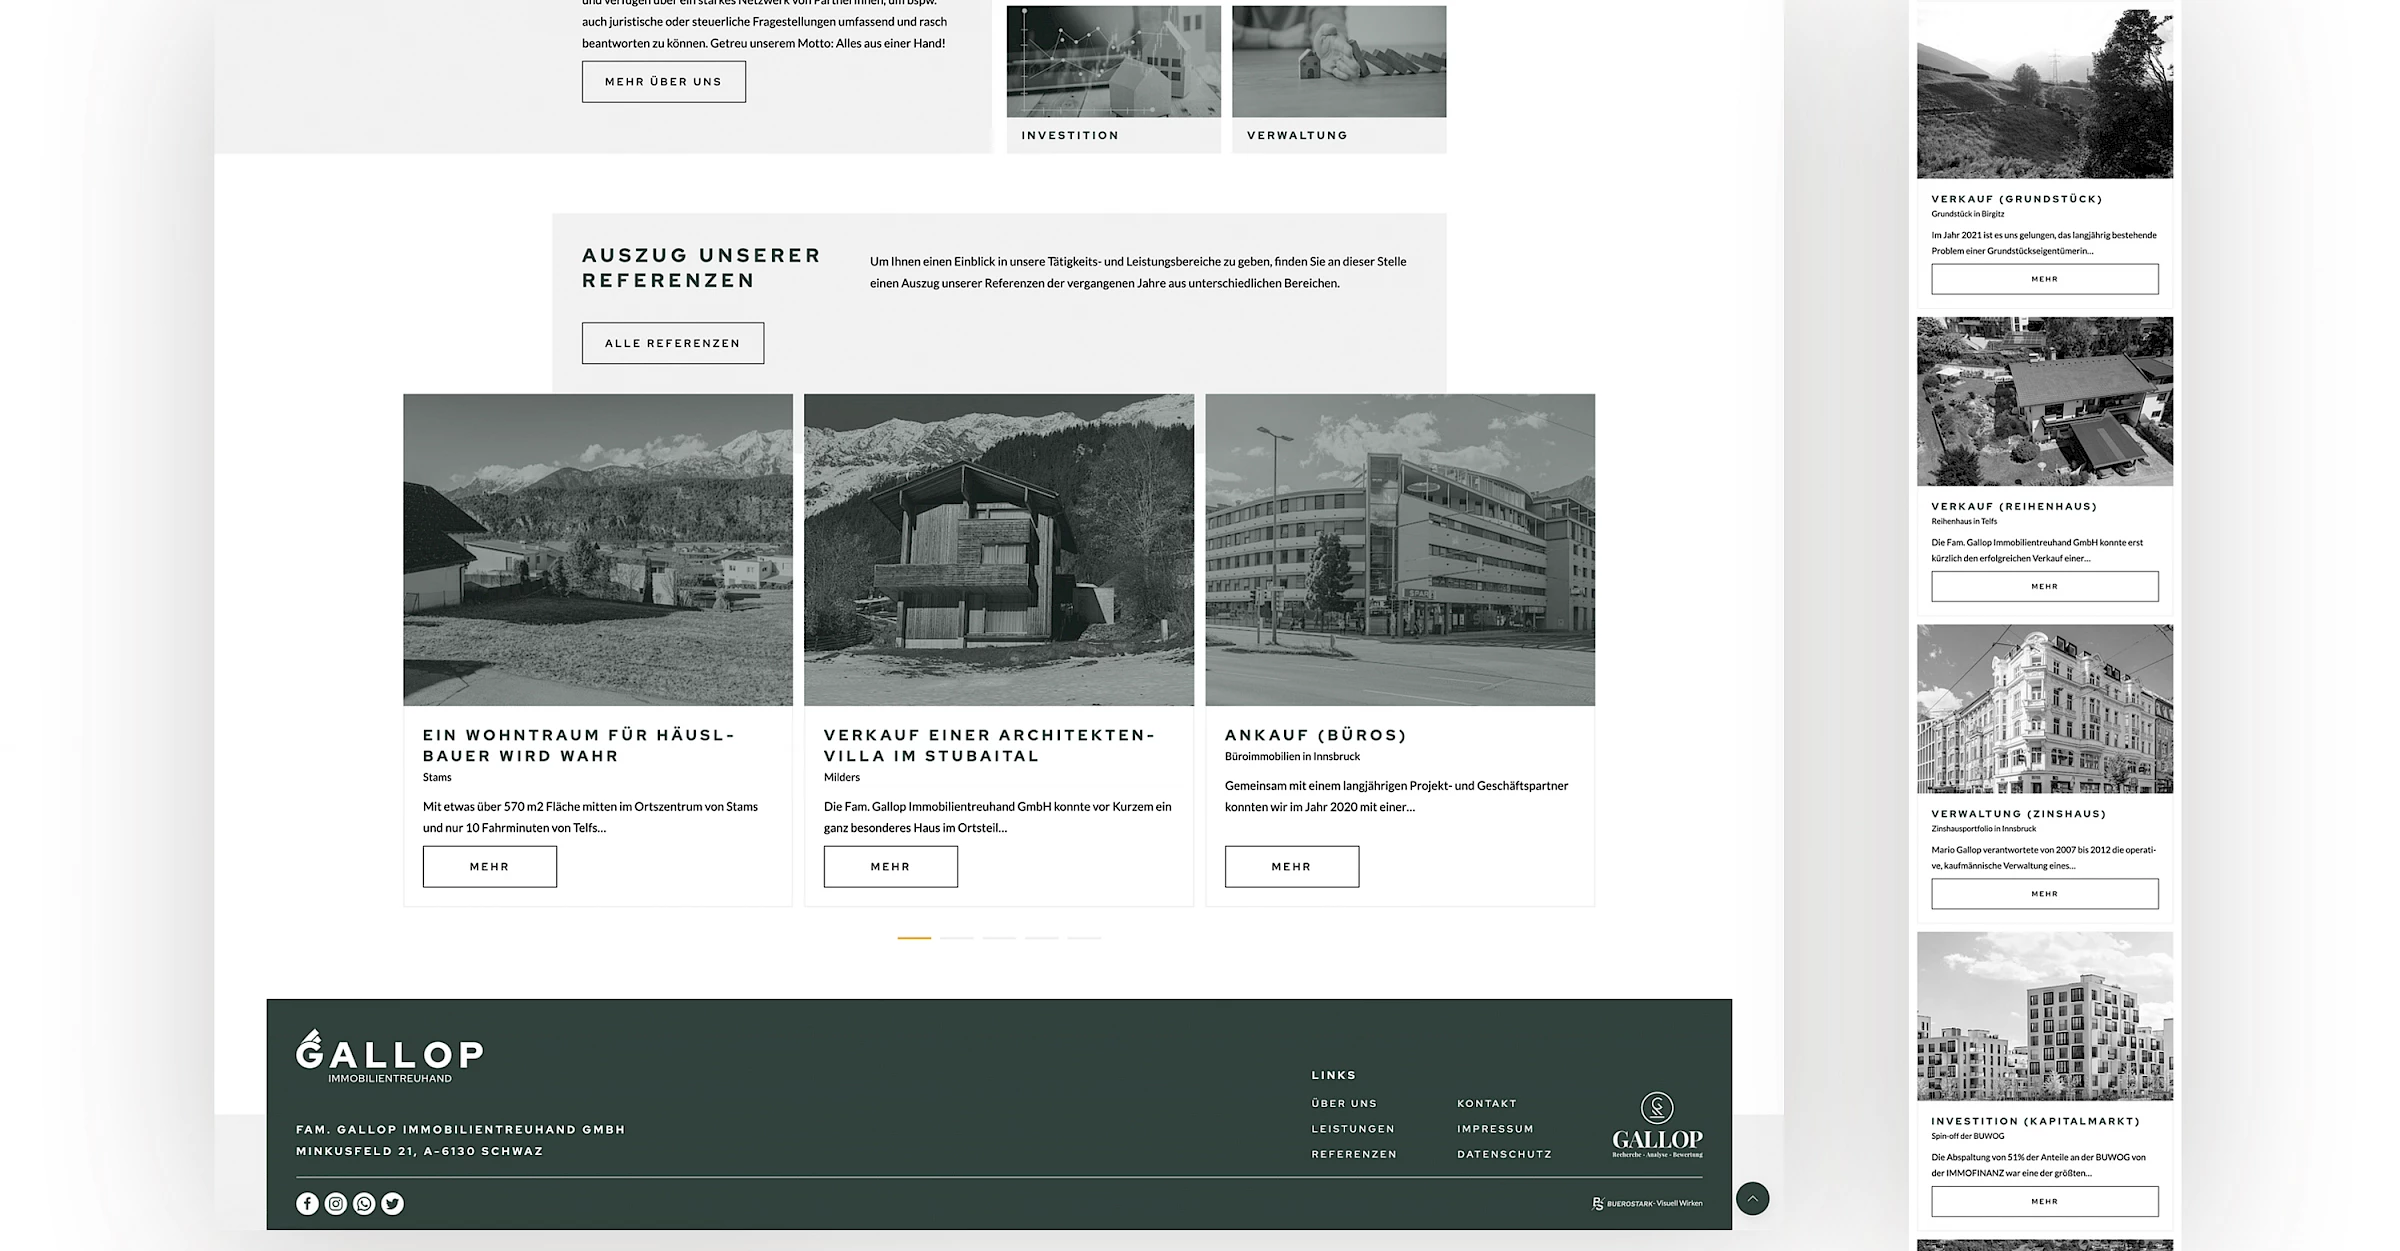 Webdesign der Website gallop.at, designed und programmiert von Buerostark Werbeagentur in Telfs